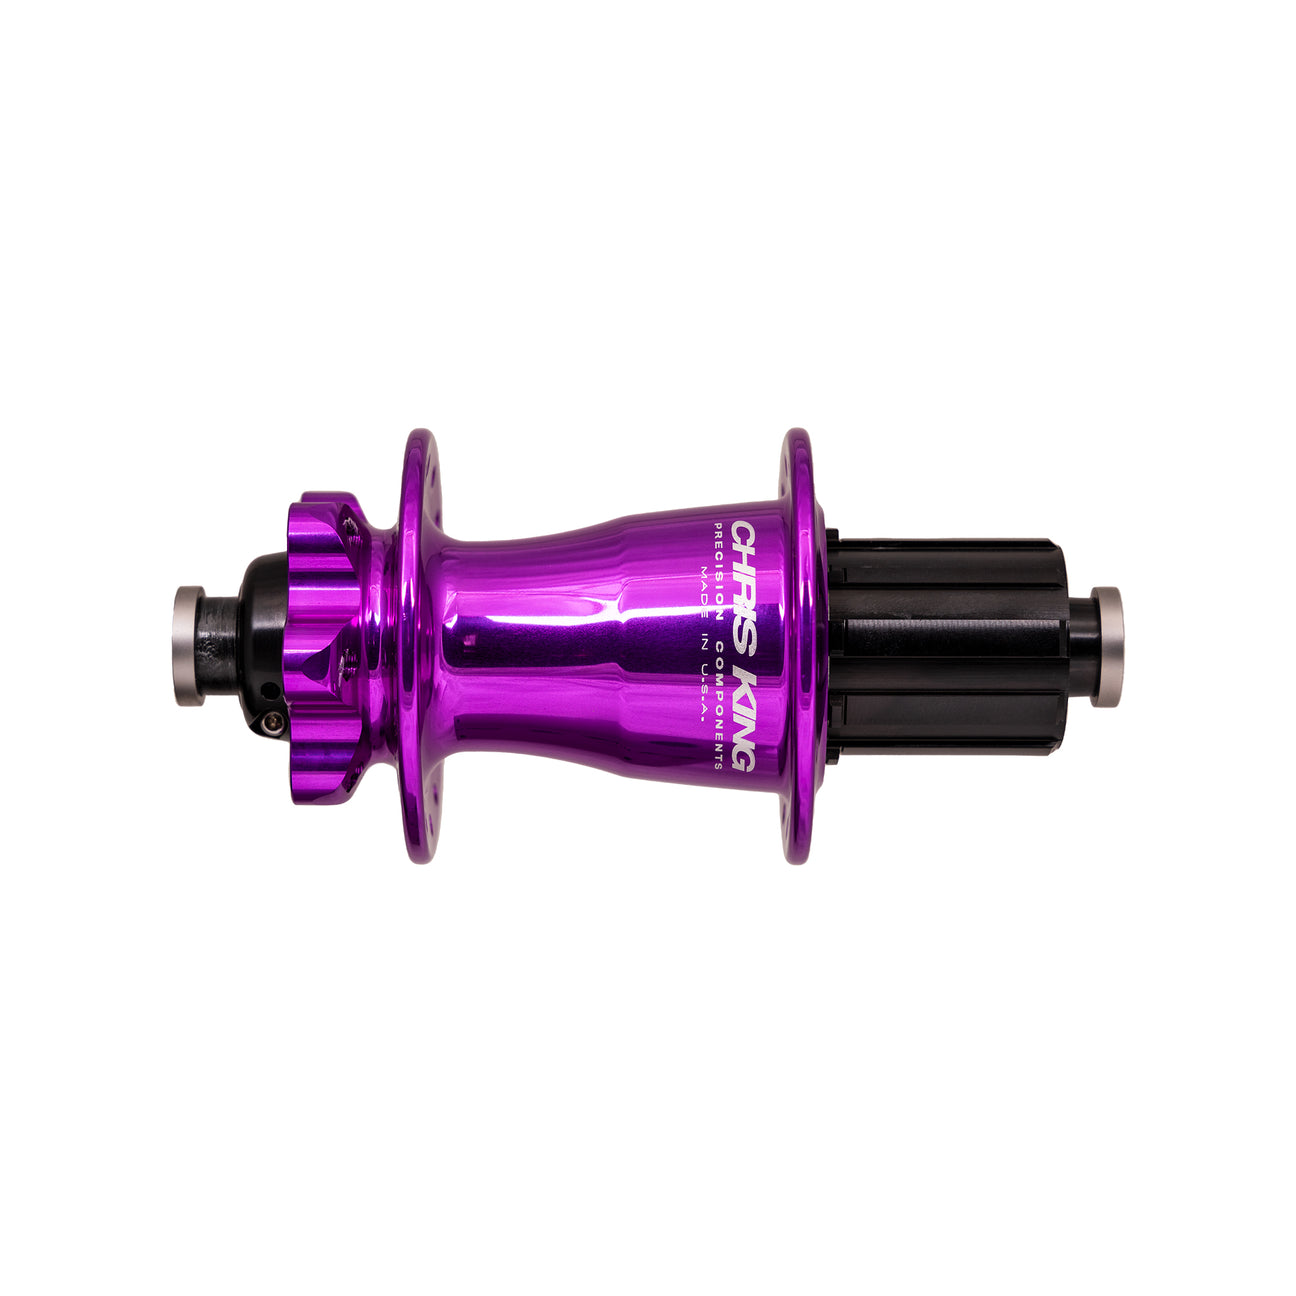 Chris King boost 6 bolt rear in 3D violet